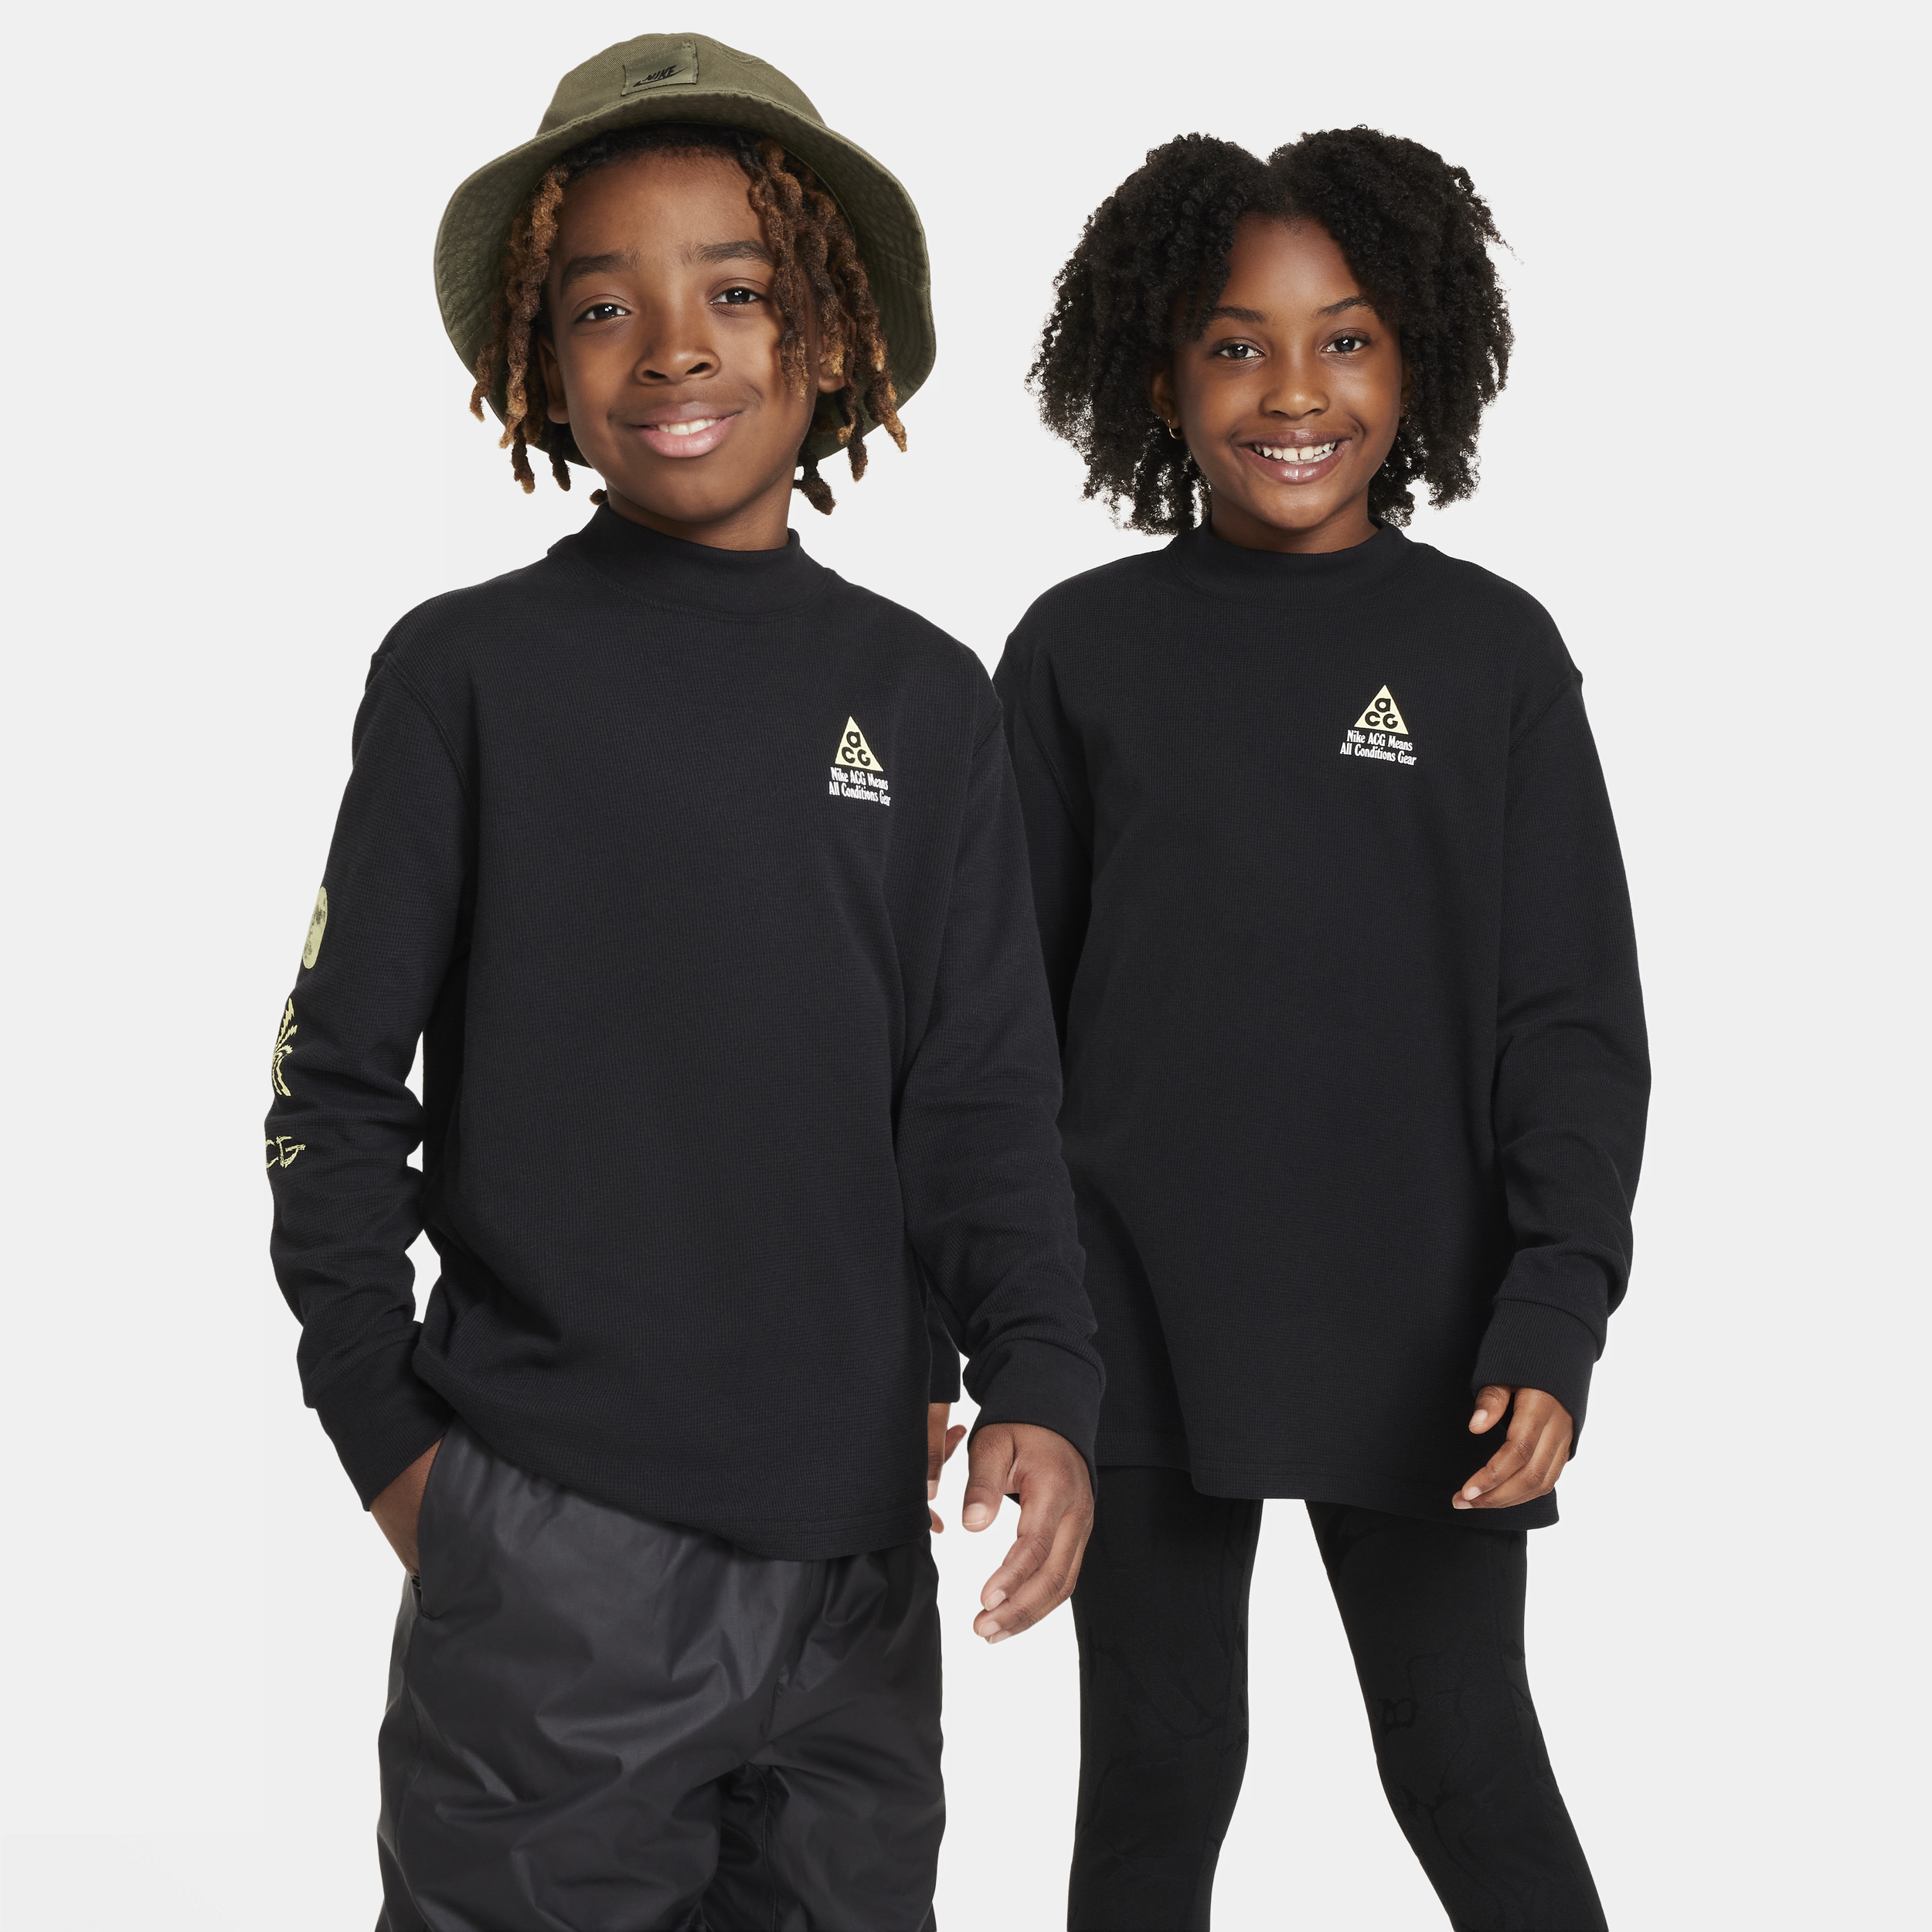 Nike ACG ruimvallende top van materiaal met wafelpatroon met lange mouwen voor kids - Zwart